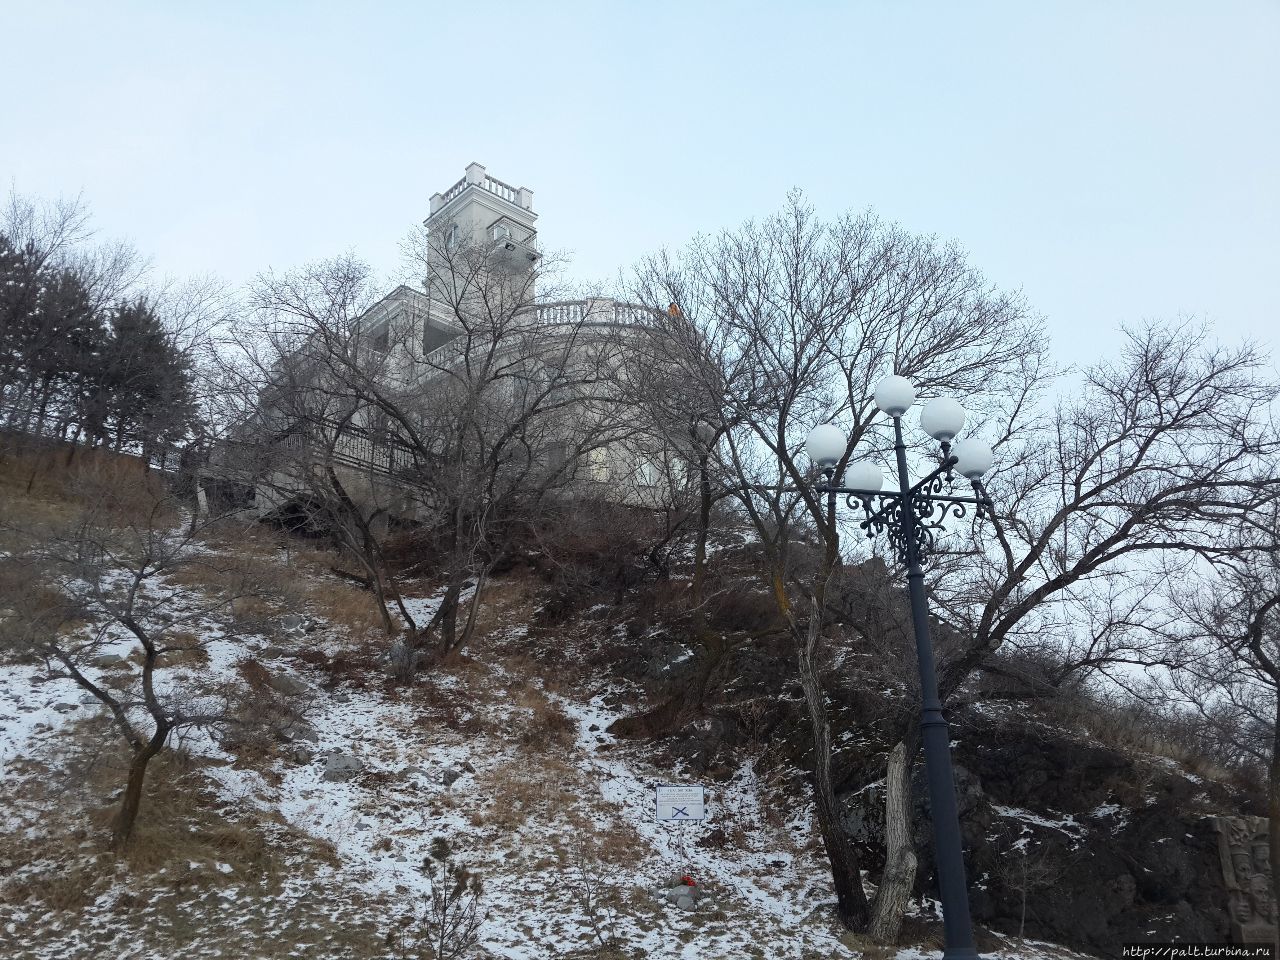 Знаменитый амурский Утес выглядит совсем по-владивостокски: хабаровский снег на нем почти не виден Хабаровск, Россия